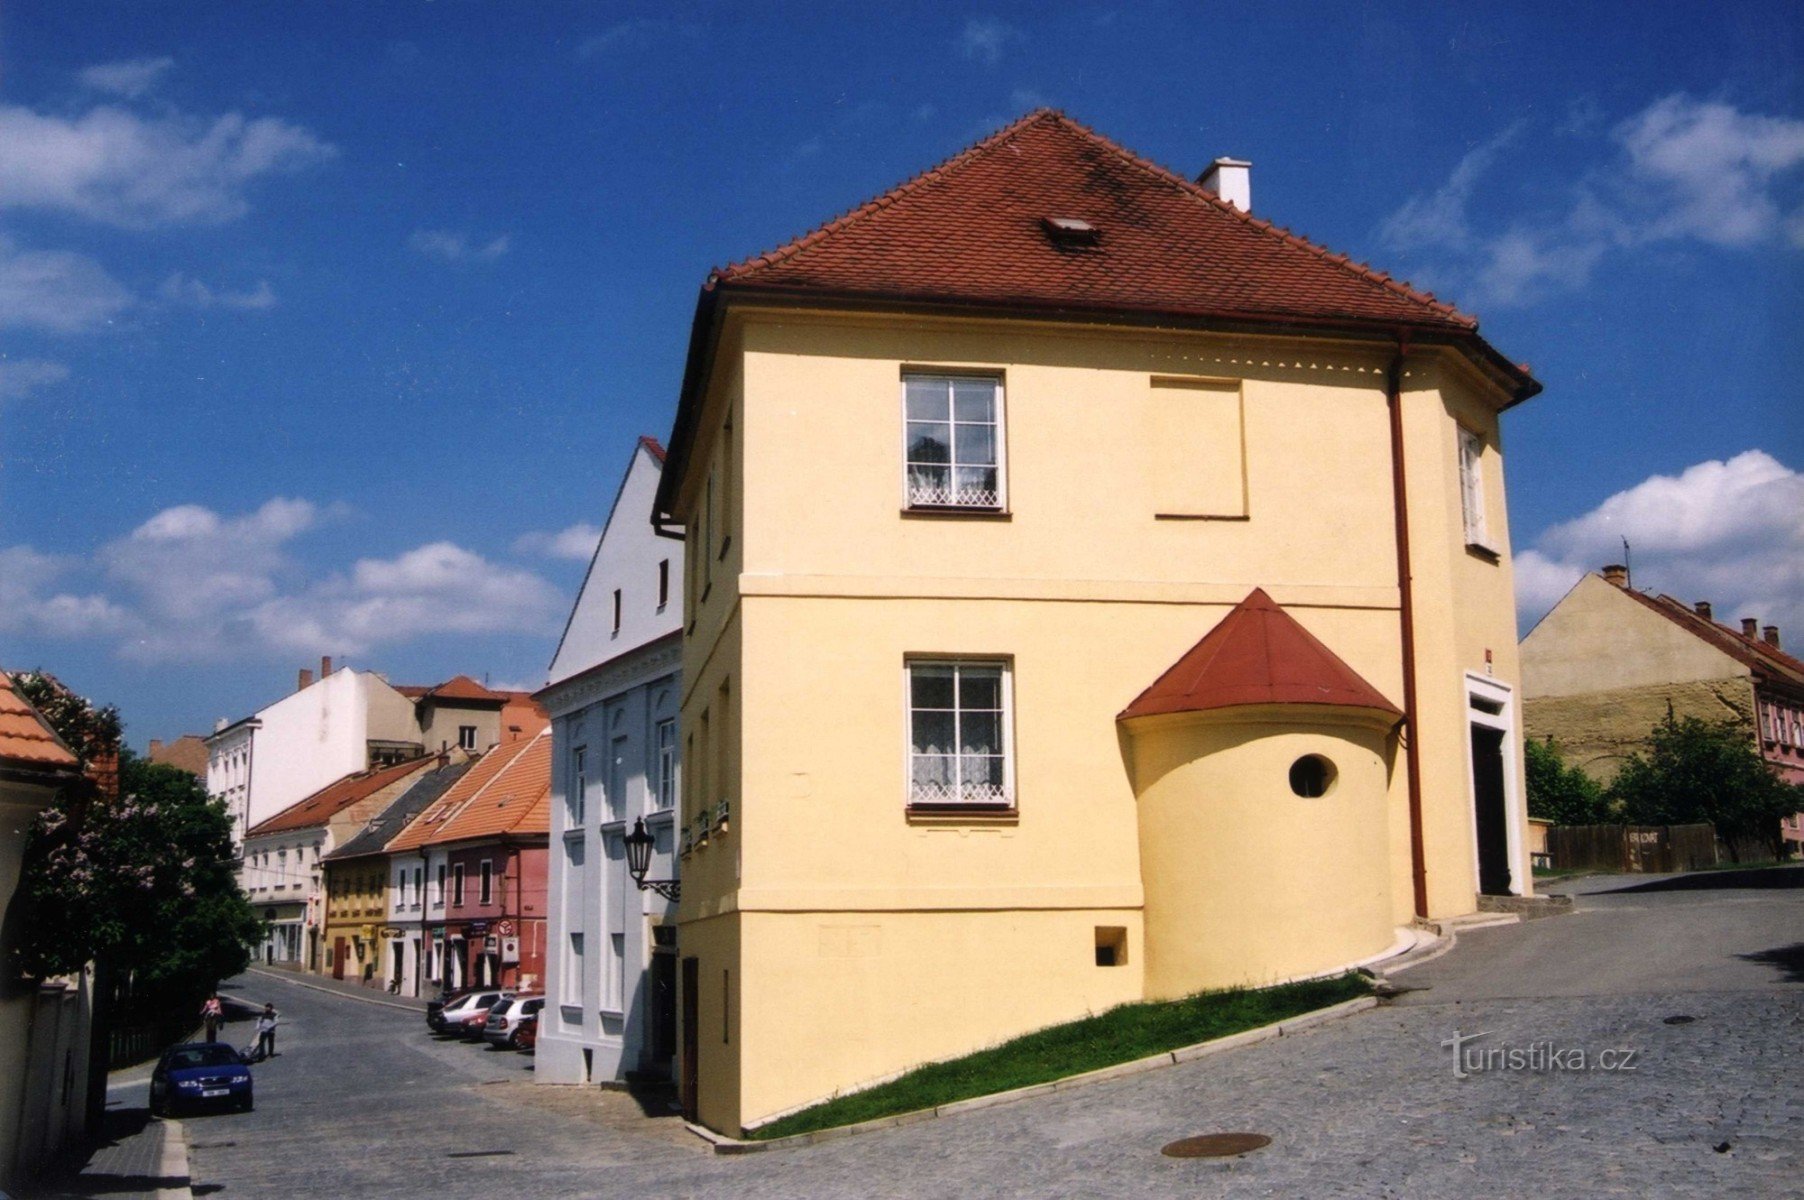 Boskovice - Jewish quarter